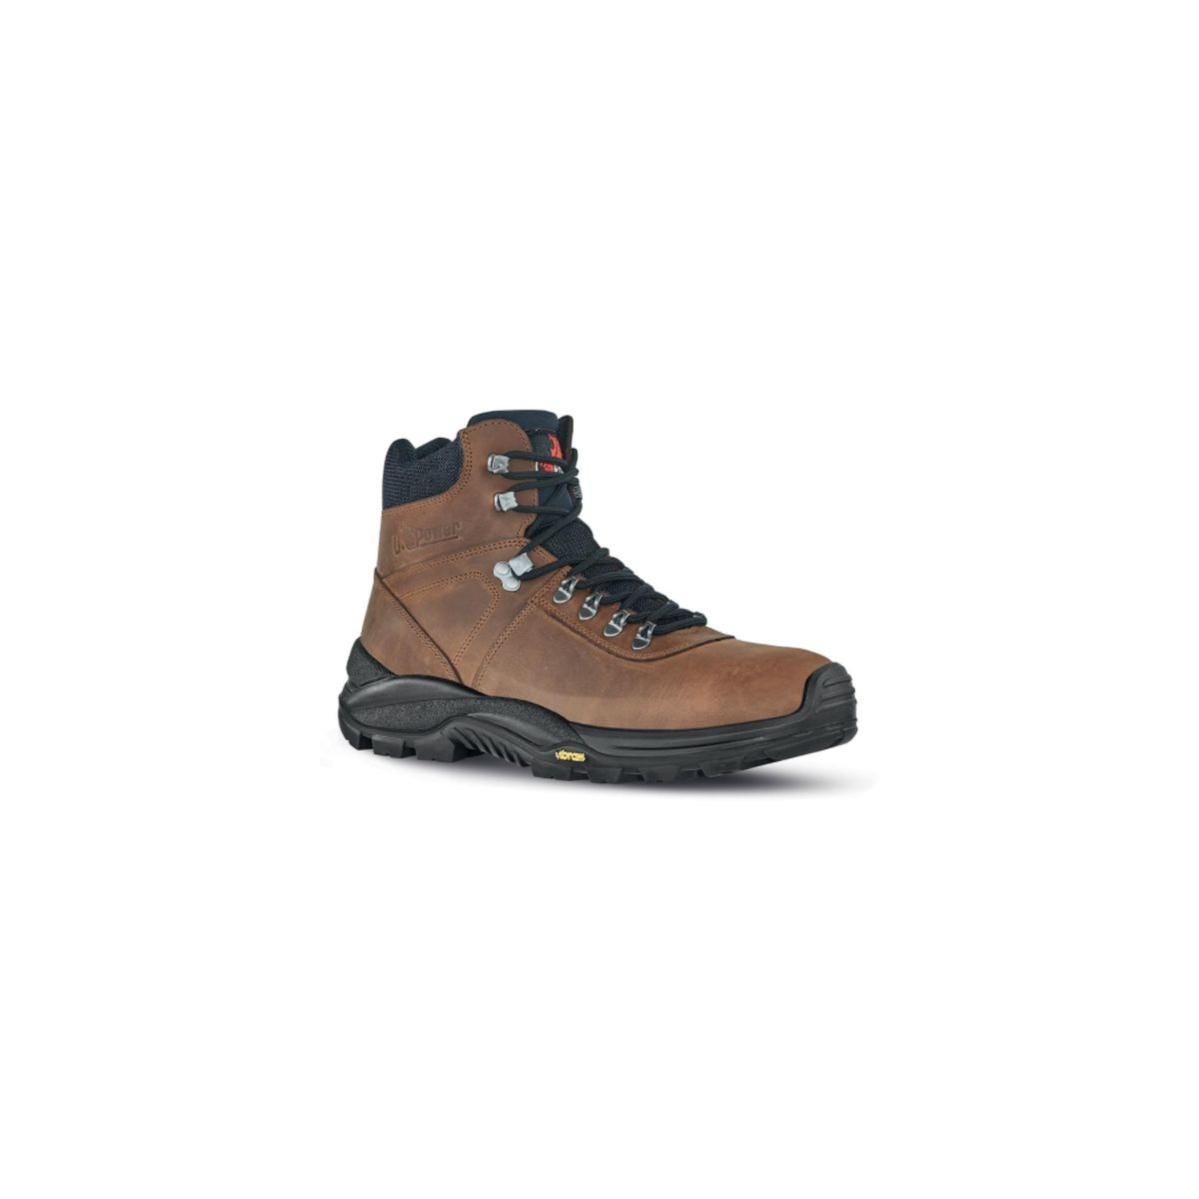 Chaussures de sécurité Trail S3 Marron - U-Power - Taille 38 0